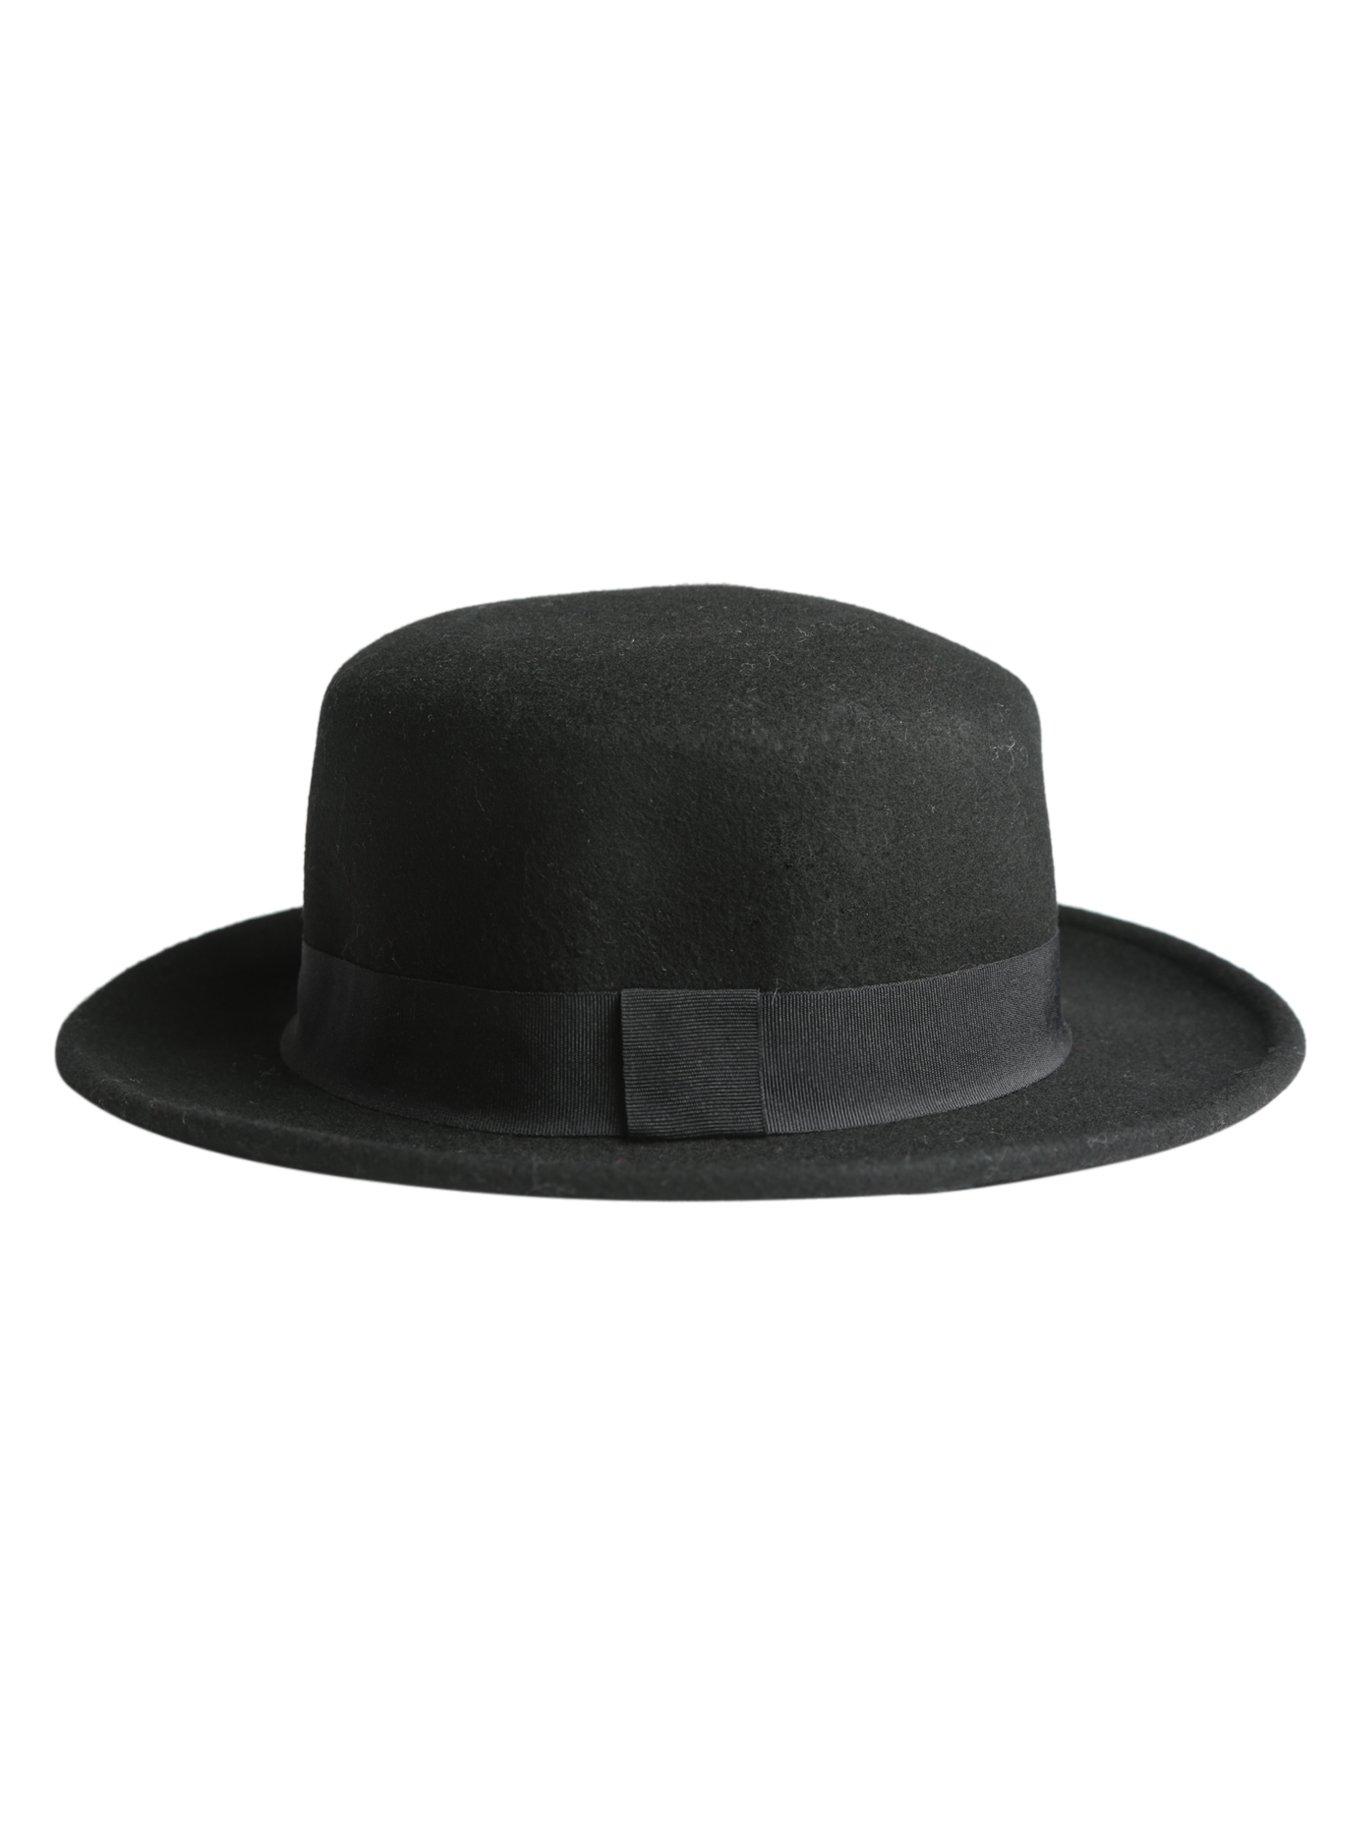 Black Felt Boater Hat, , alternate